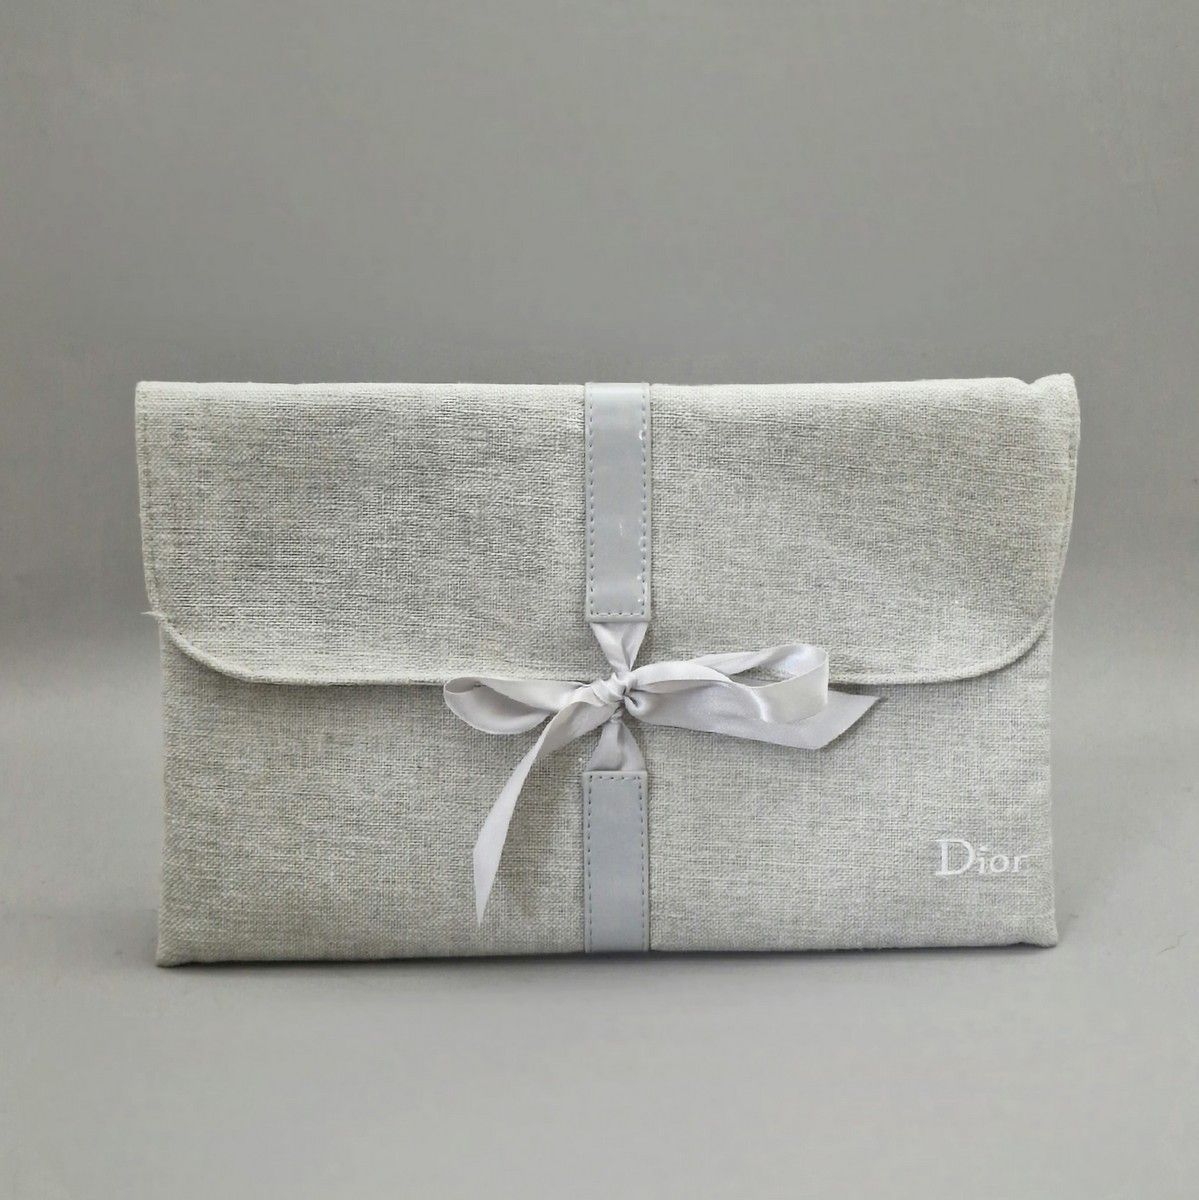 Null 迪奥 - 灰色棉和缎子的旅行包
包括一条毛巾和一条白色绣花海绵的头带，Dior Beauty。
BE (小污点)
原装包
TBE